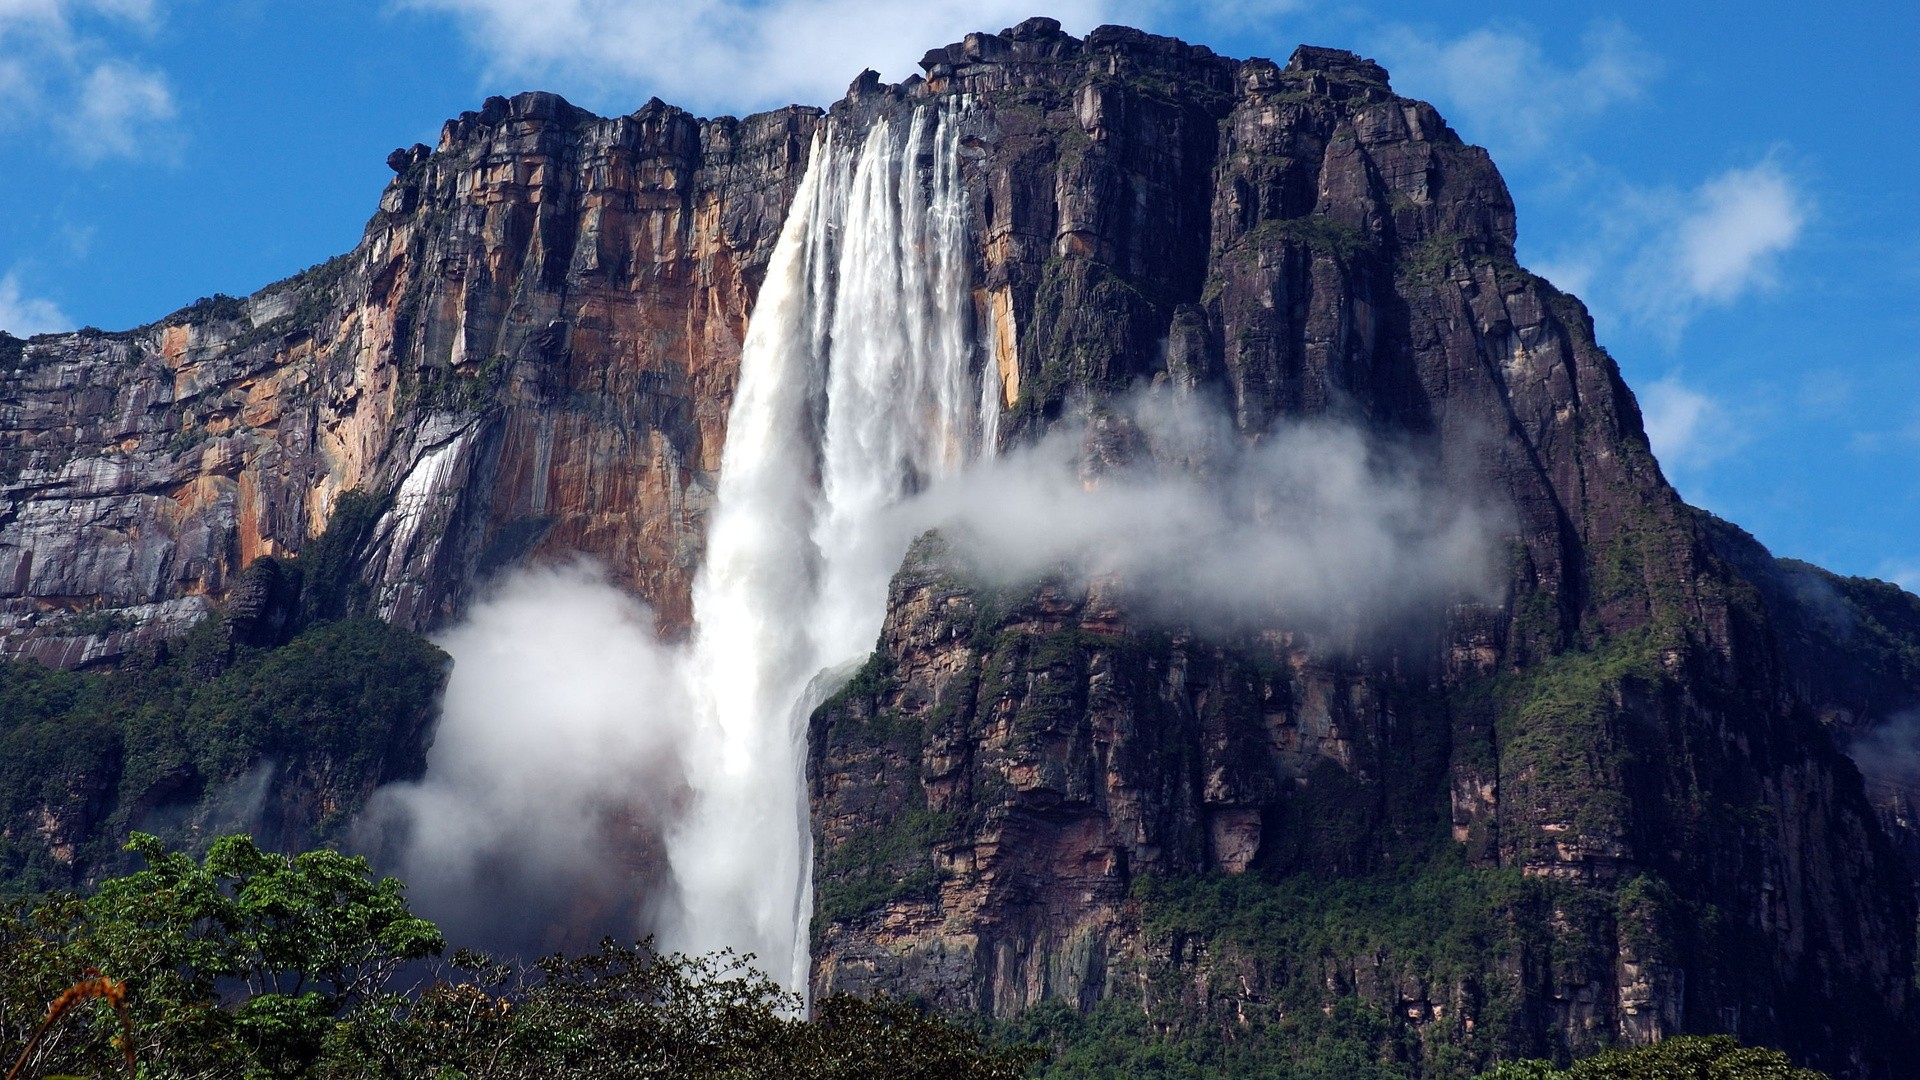 General 1920x1080 Angel Falls Venezuela waterfall nature landscape mountains rocks rock formation Salto Ángel  Mount Roraima